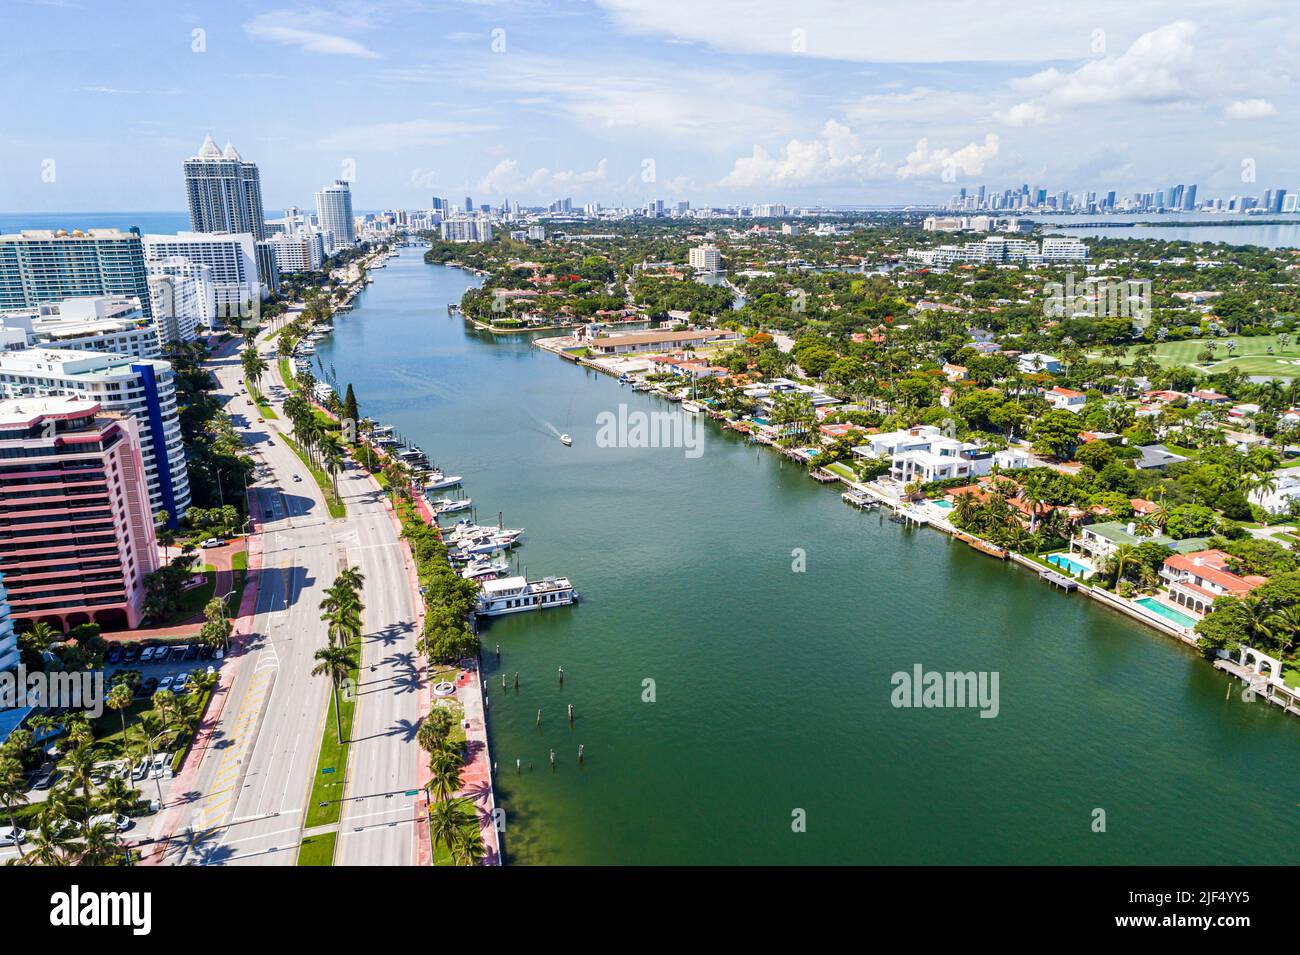 Miami Beach Florida, vista aérea desde arriba, Collins Avenue Indian Creek La Gorce Island Waterfront mansiones casas casas residencias,ci Foto de stock